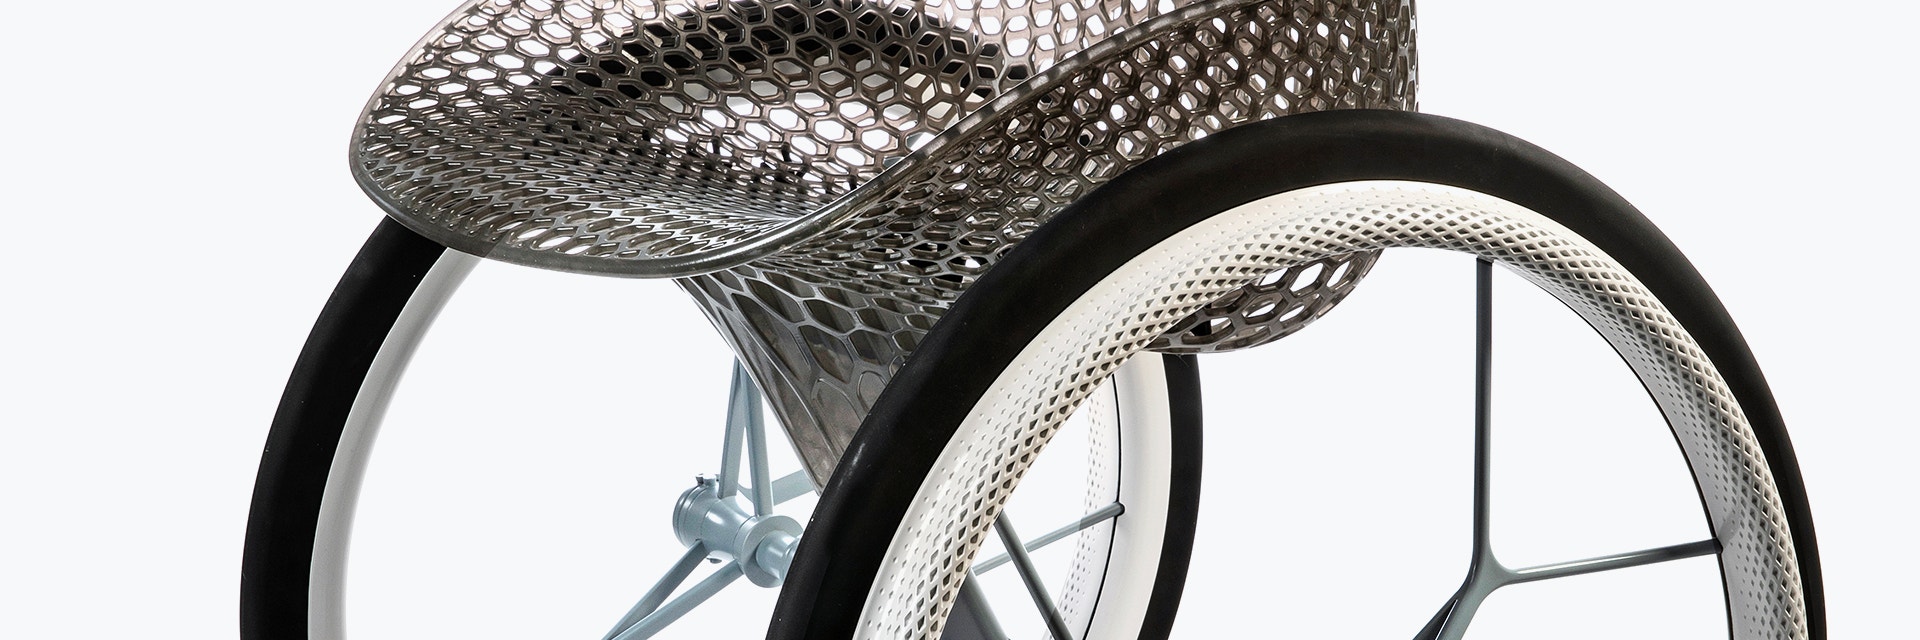 Vue de la partie centrale d'une assise géométrique imprimée en 3D à partir d'un prototype de fauteuil roulant aux allures futuristes personnalisé et imprimé en 3D, à l'aide de plusieurs matériaux de fabrication additive. L'assise avec une structure en treillis est fabriquée en résine grise translucide. Les rayons des roues sont fabriqués en matériaux imprimé en 3D.